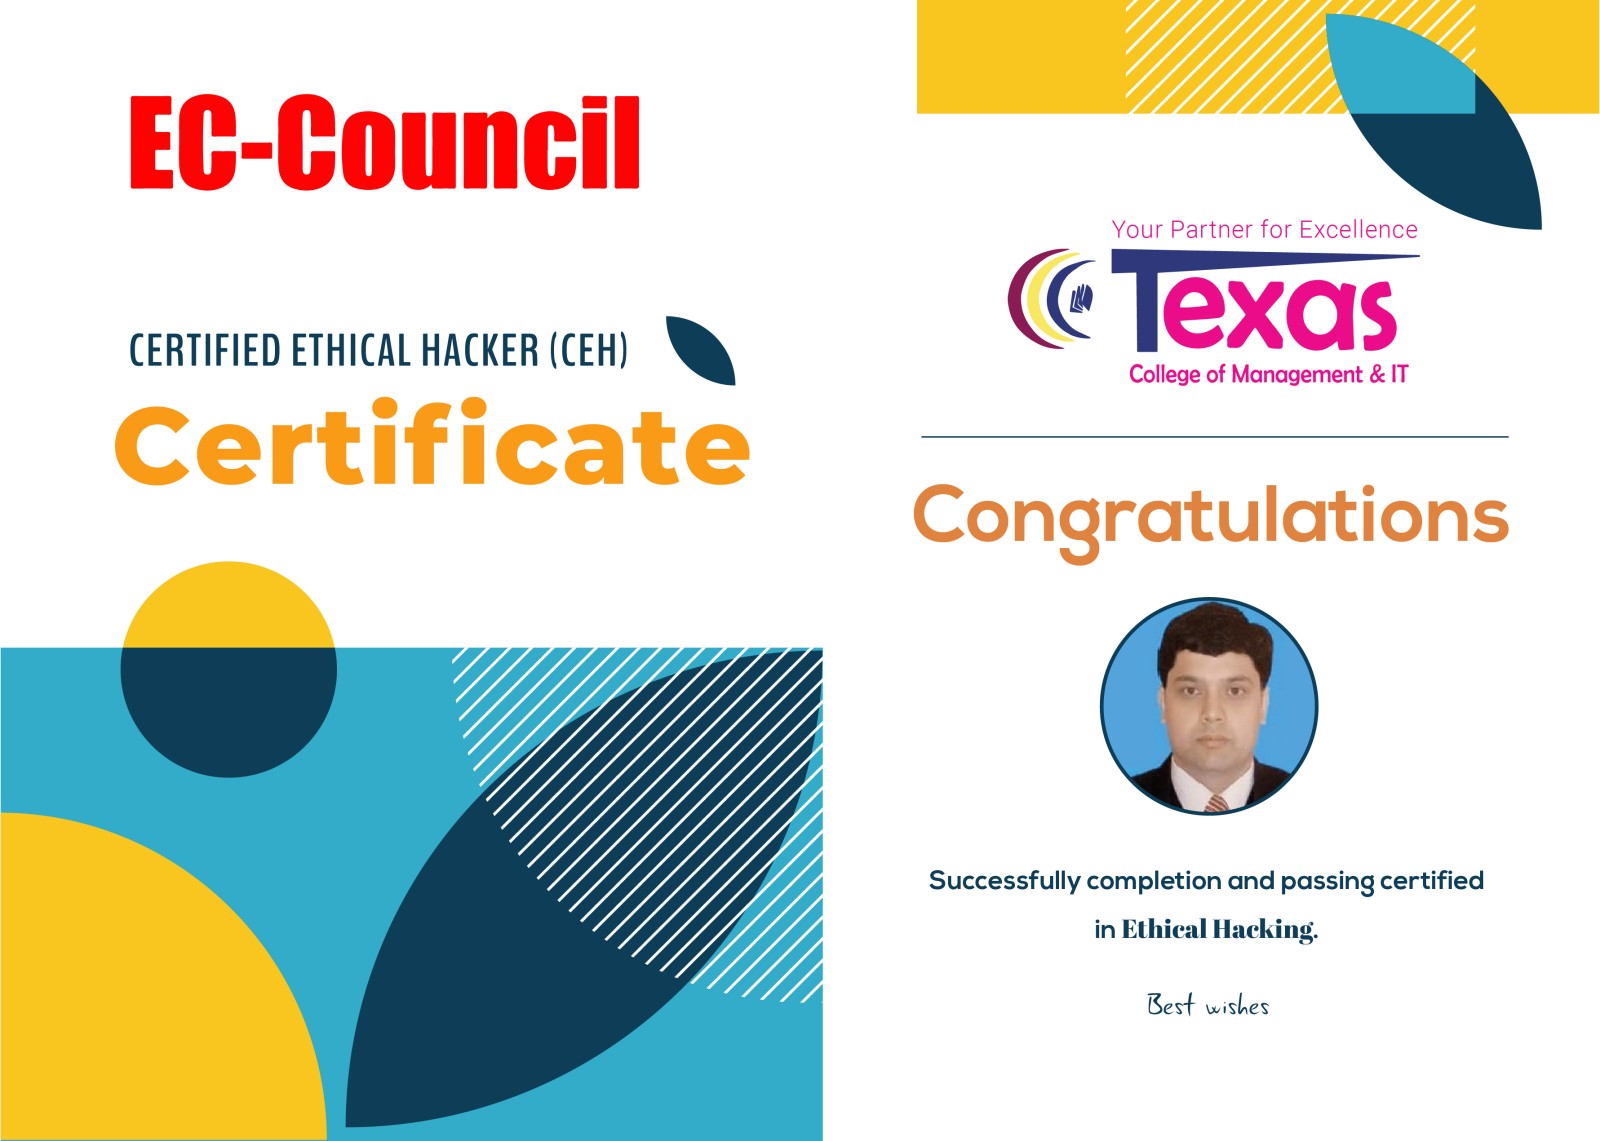 Certification under EC-Council